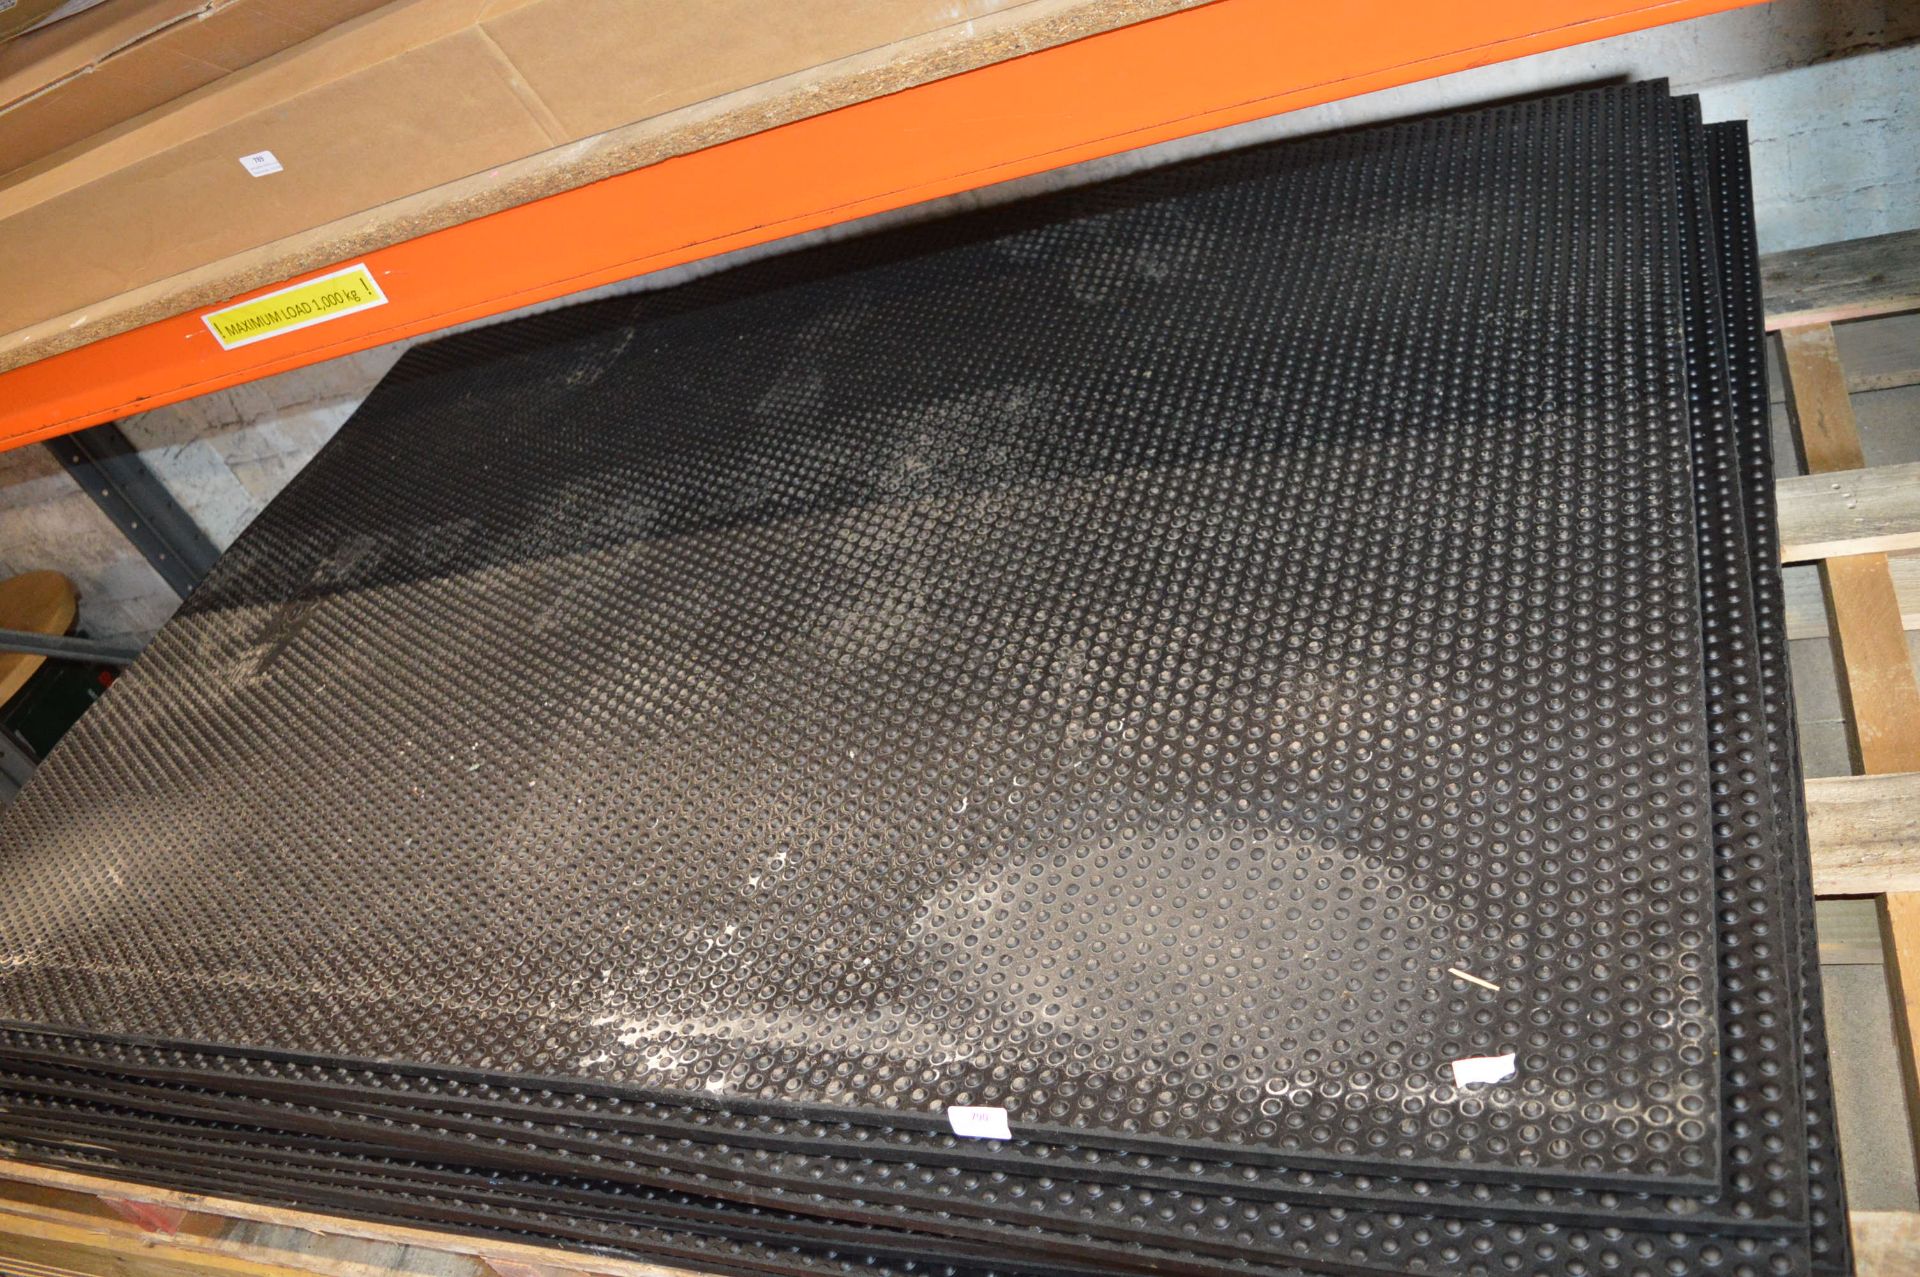 Twelve 180x120cm Non-Slip Rubber Flooring Panels R